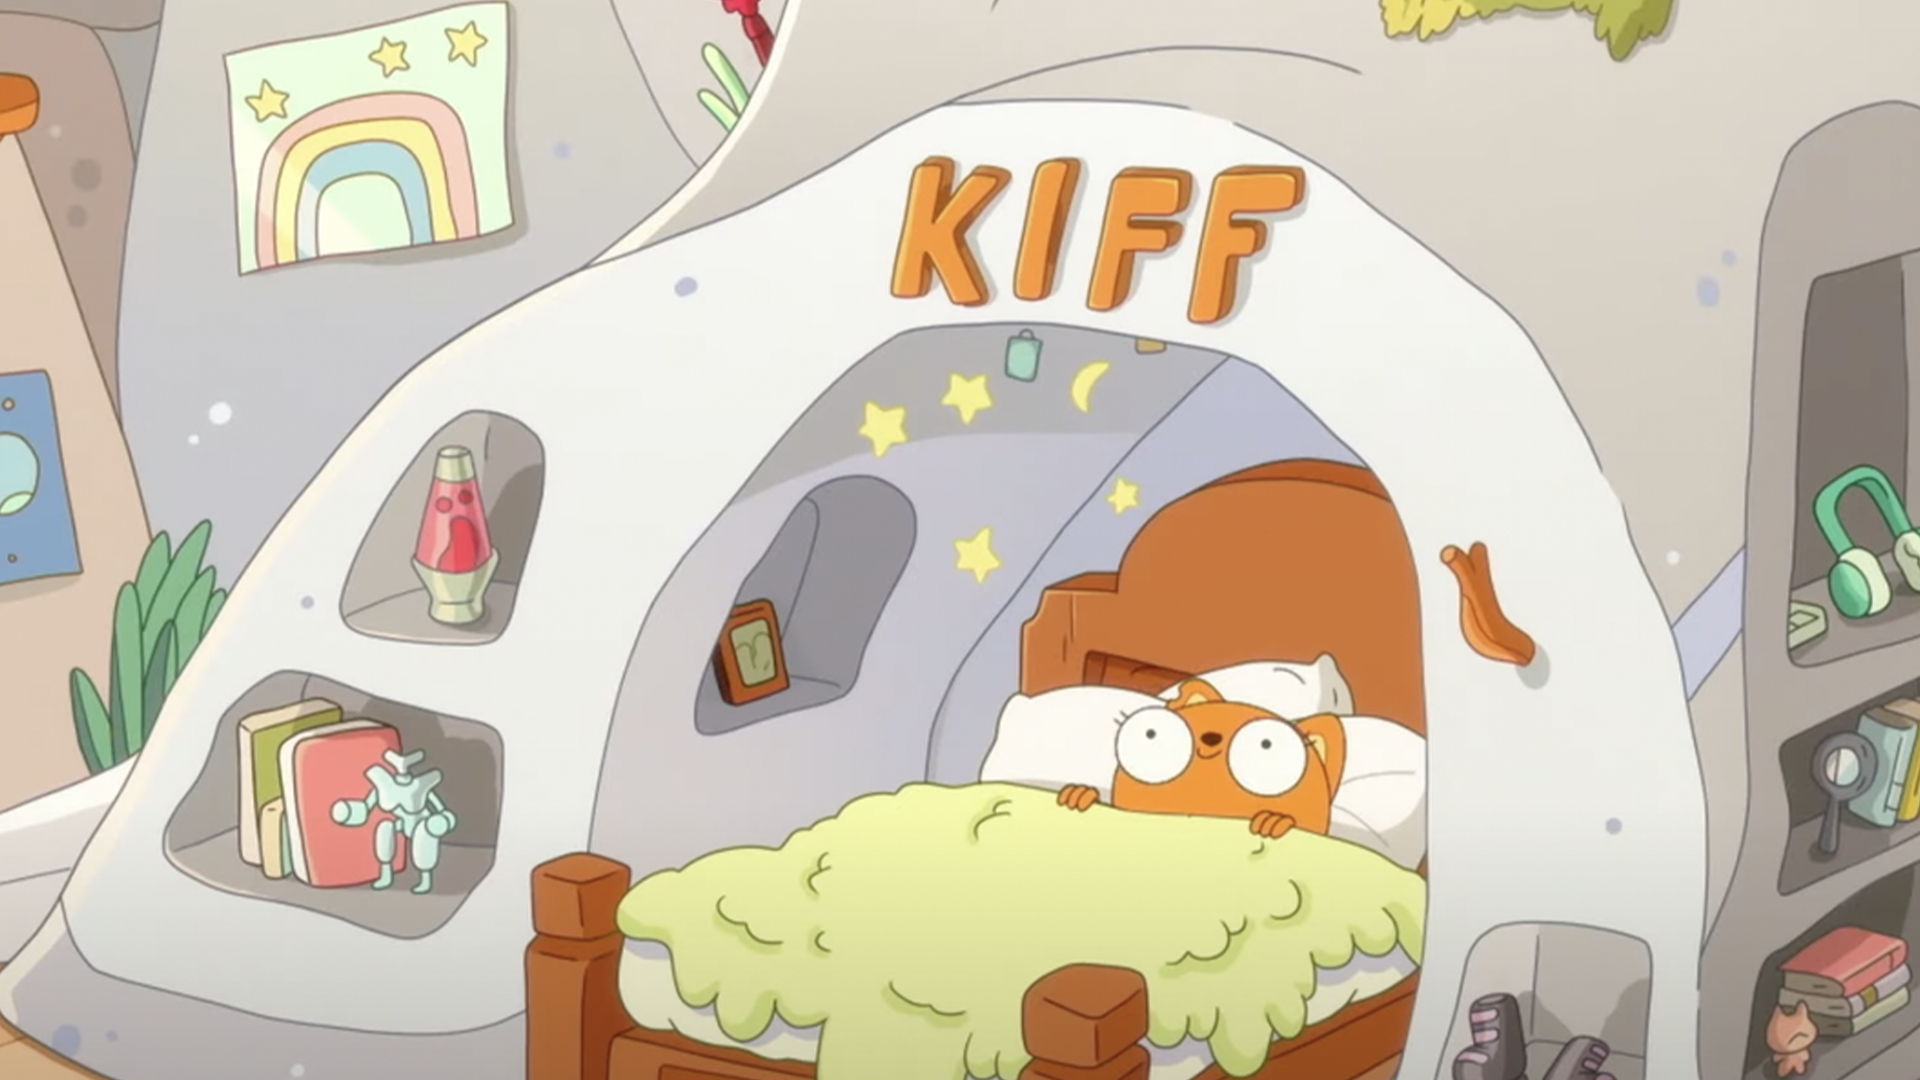 Kiff in Bed